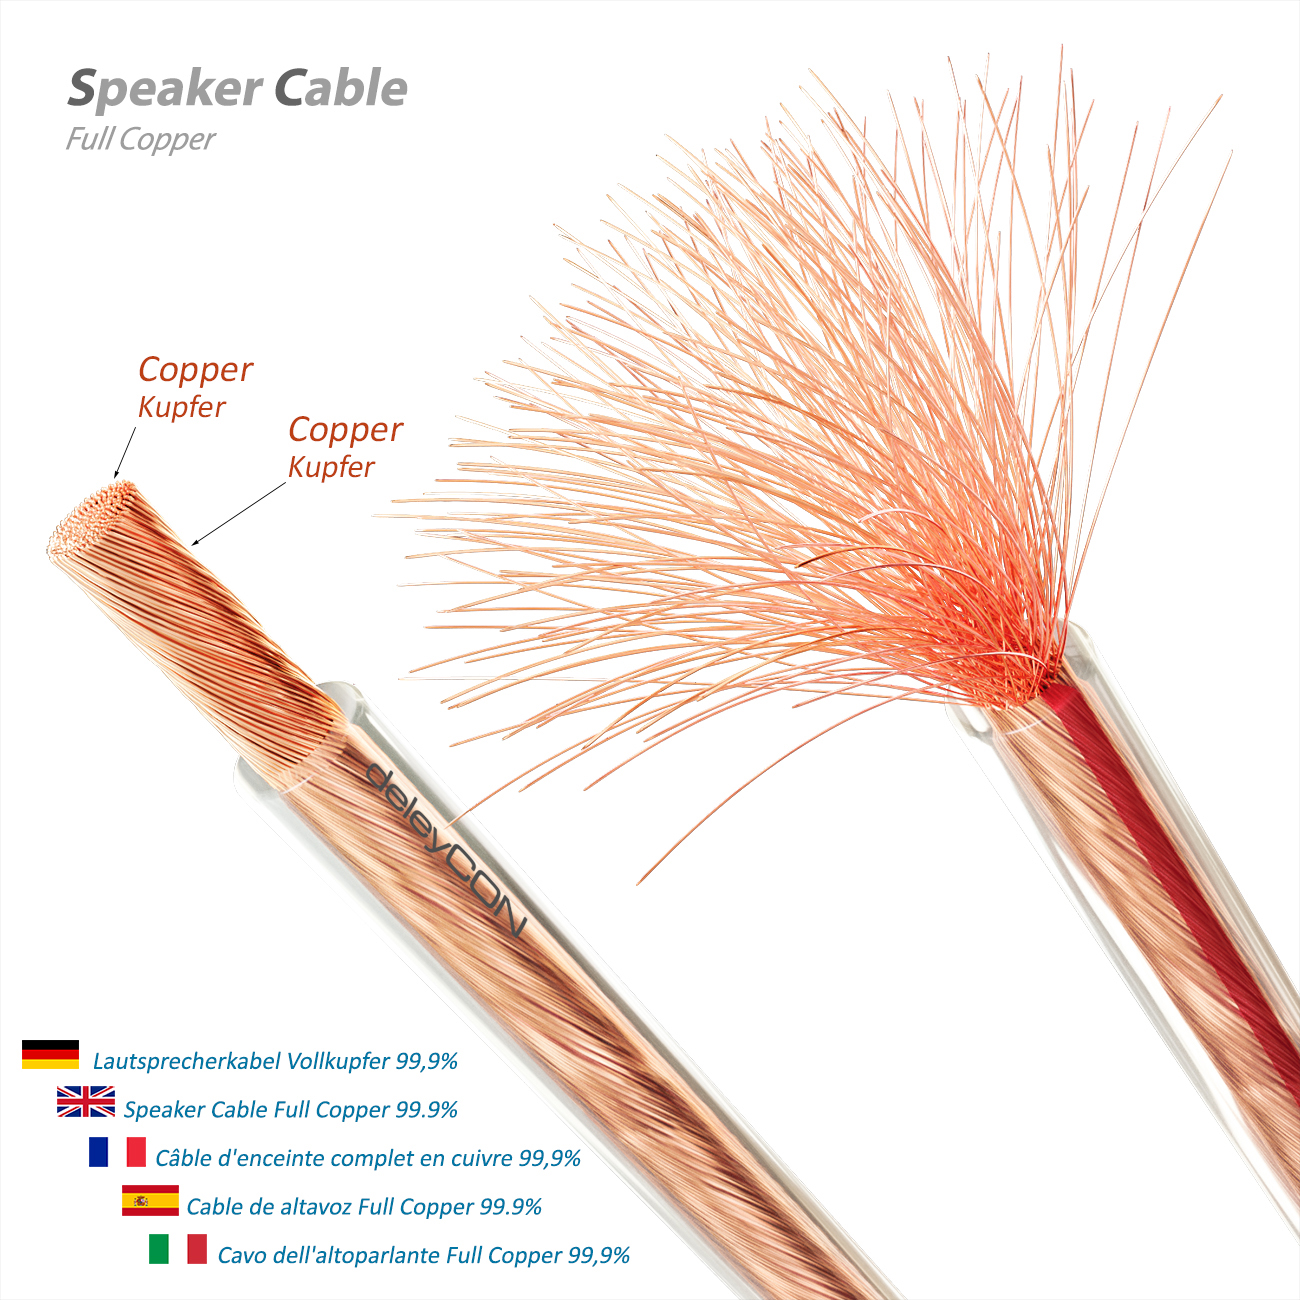 deleyCON Lautsprecherkabel 2x 1,5 mm² - reines Kupfer - OFC Speaker Cable  Kabel - Audio Boxenkabel für HiFi Lautsprecher & Surround -  Polaritätskennzeichnung - Transparent - deleyCON